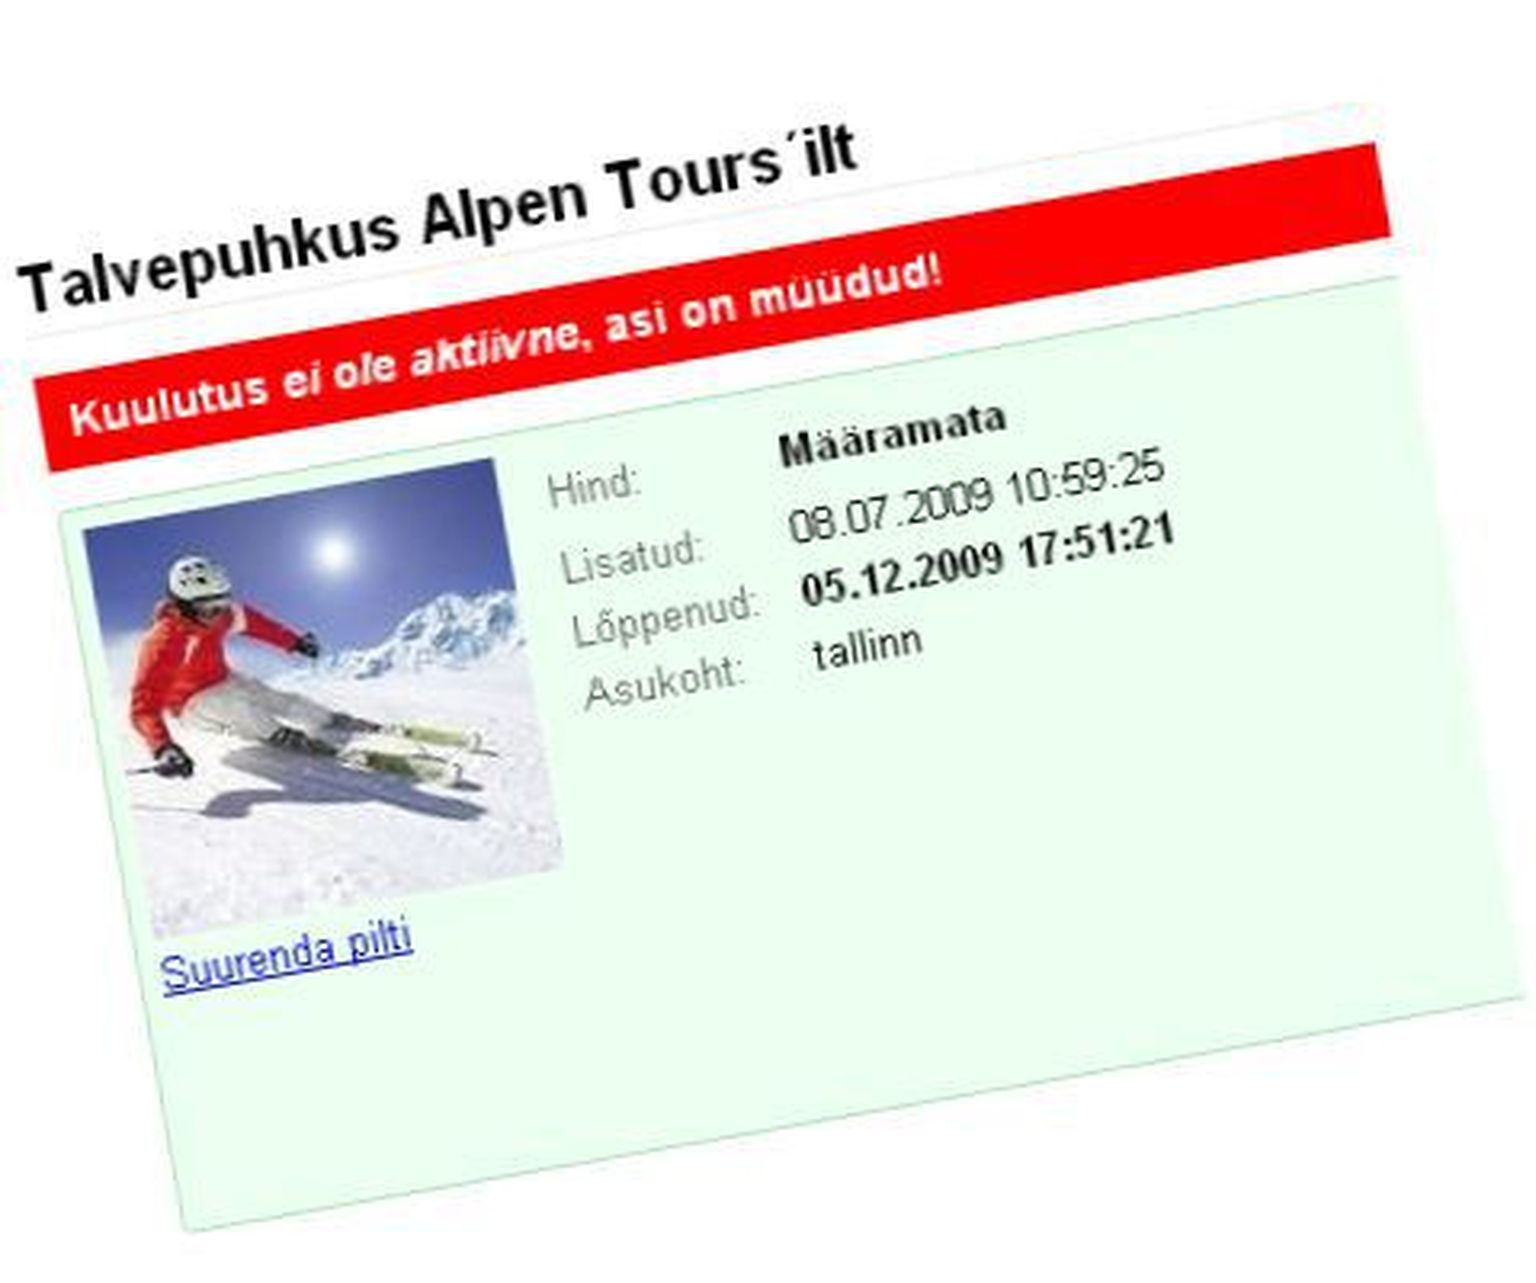 Fragment Alpen Toursi reisikuulutusest intenetipoes.